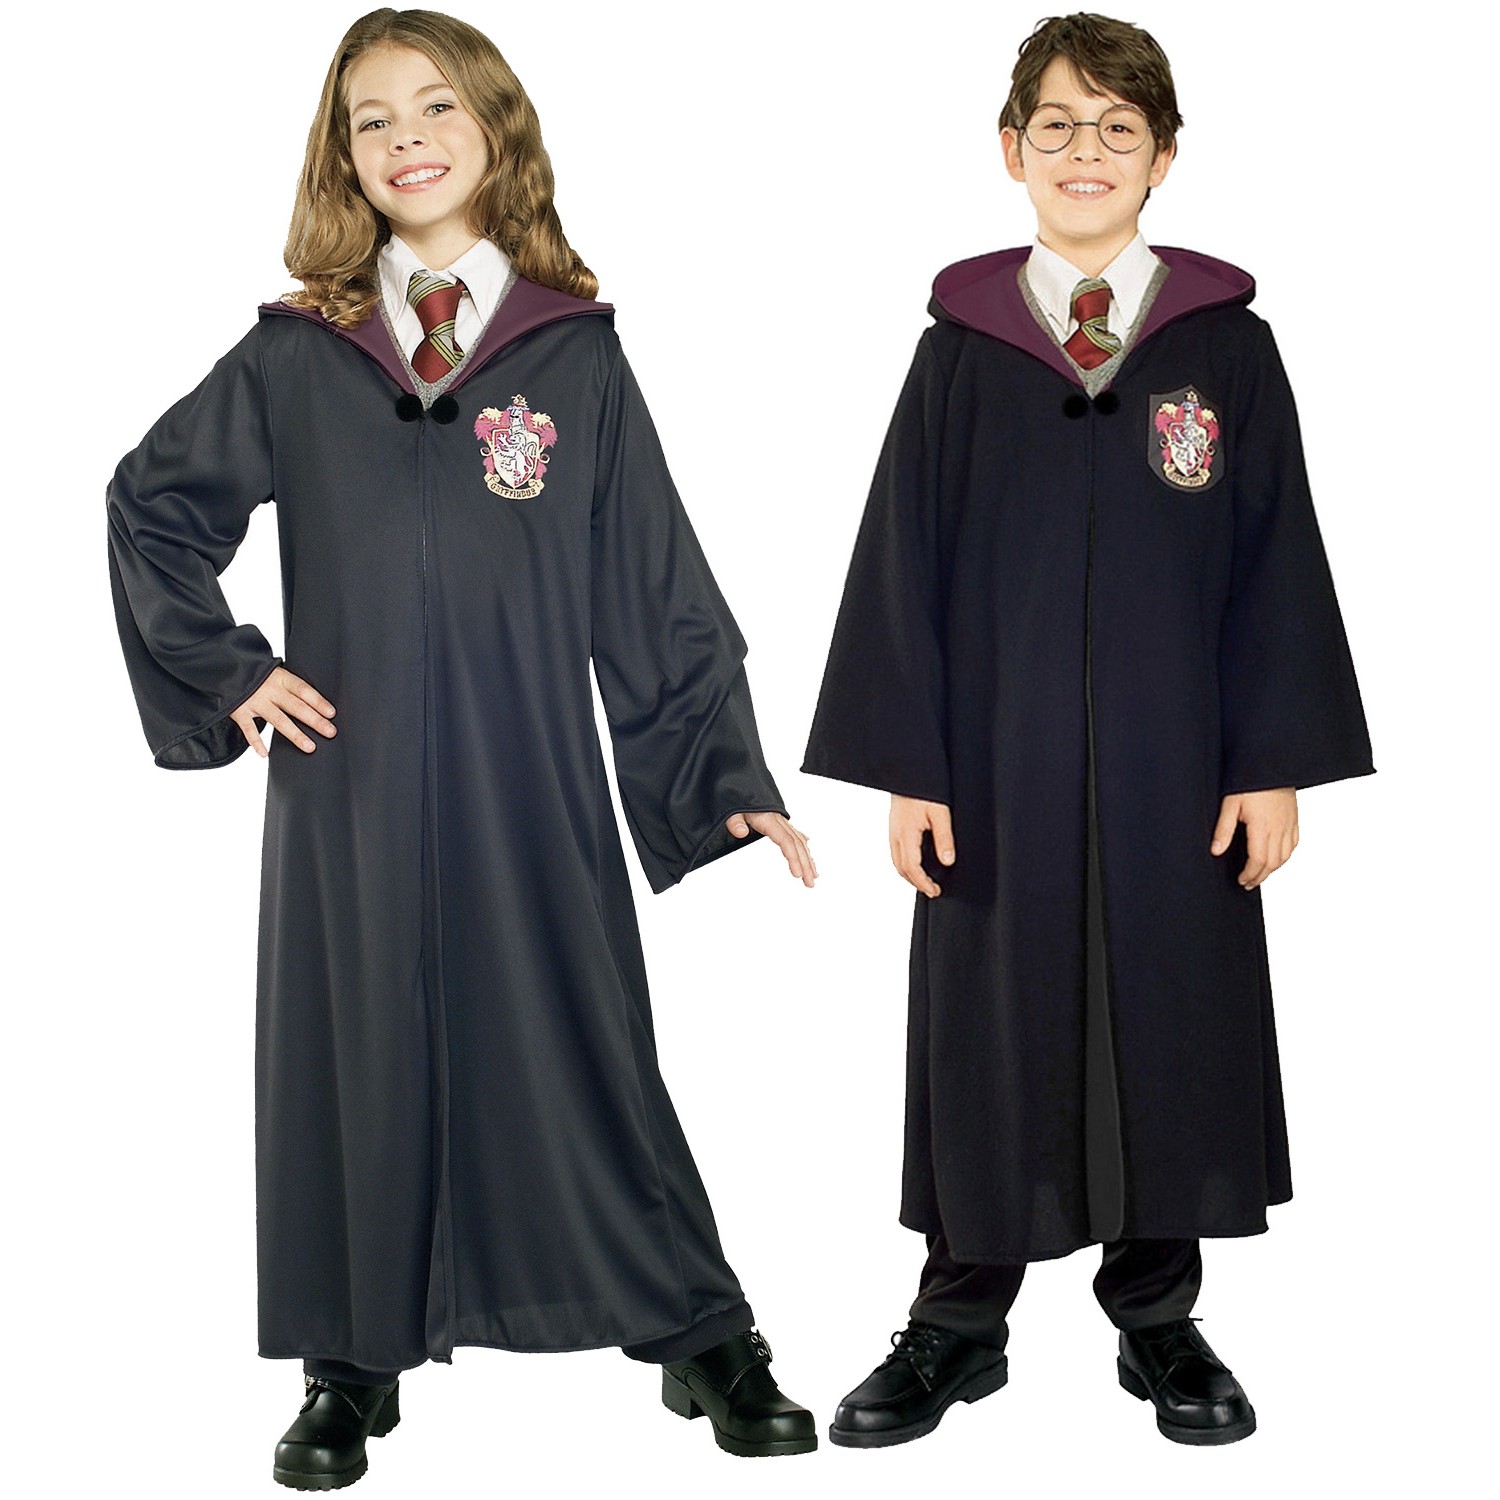 Déguisement fille Gryffondor Harry Potter taille 7-8 ans